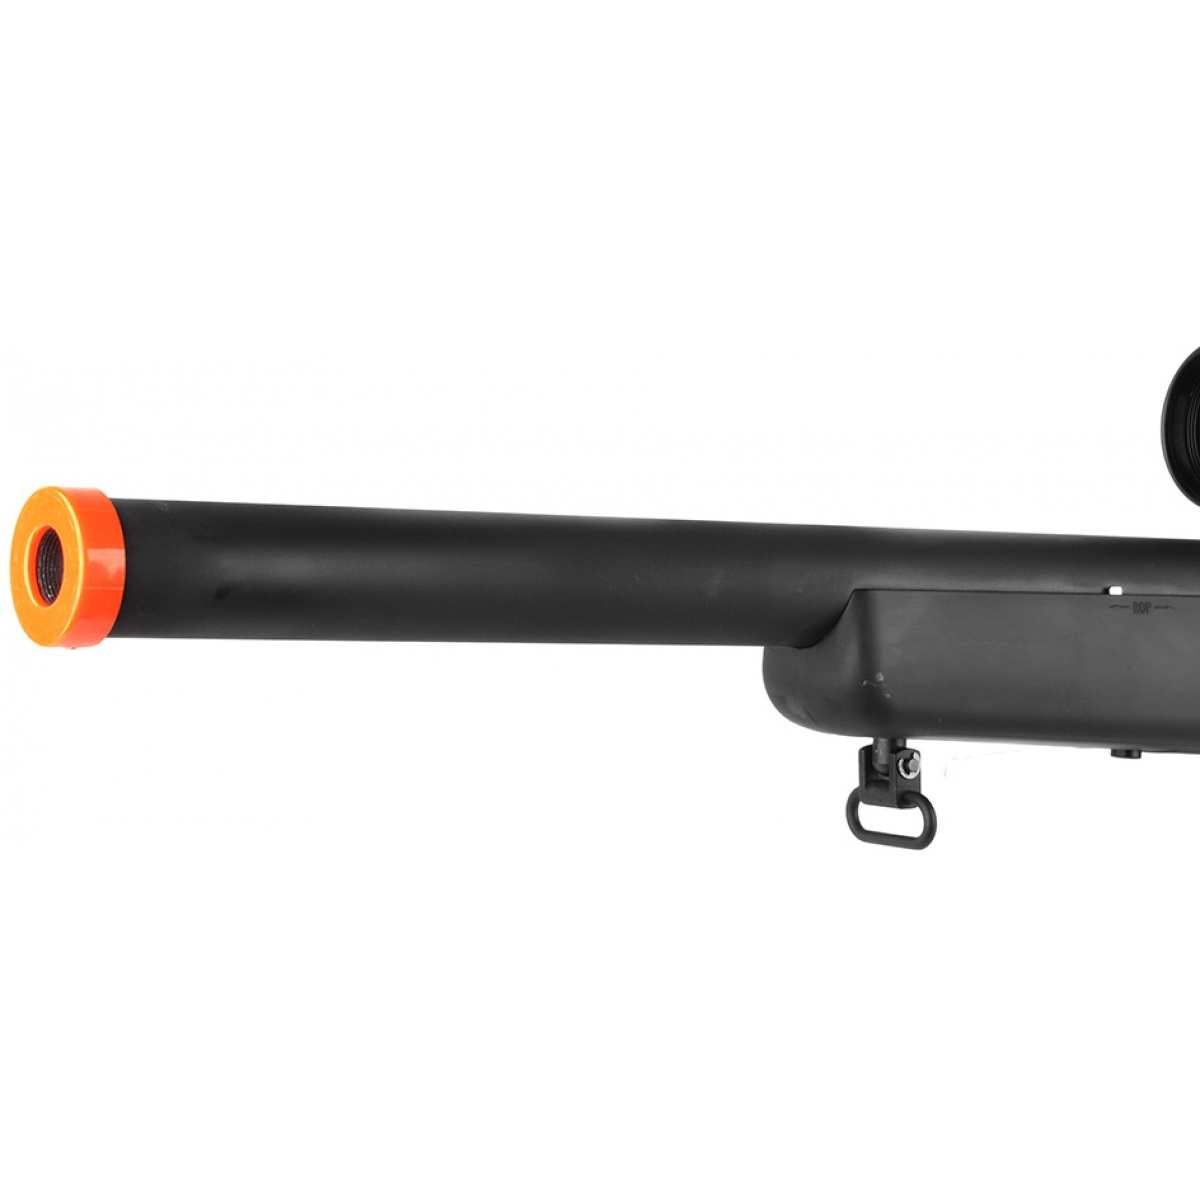 Well BAR-10 G-Spec Sniper Package